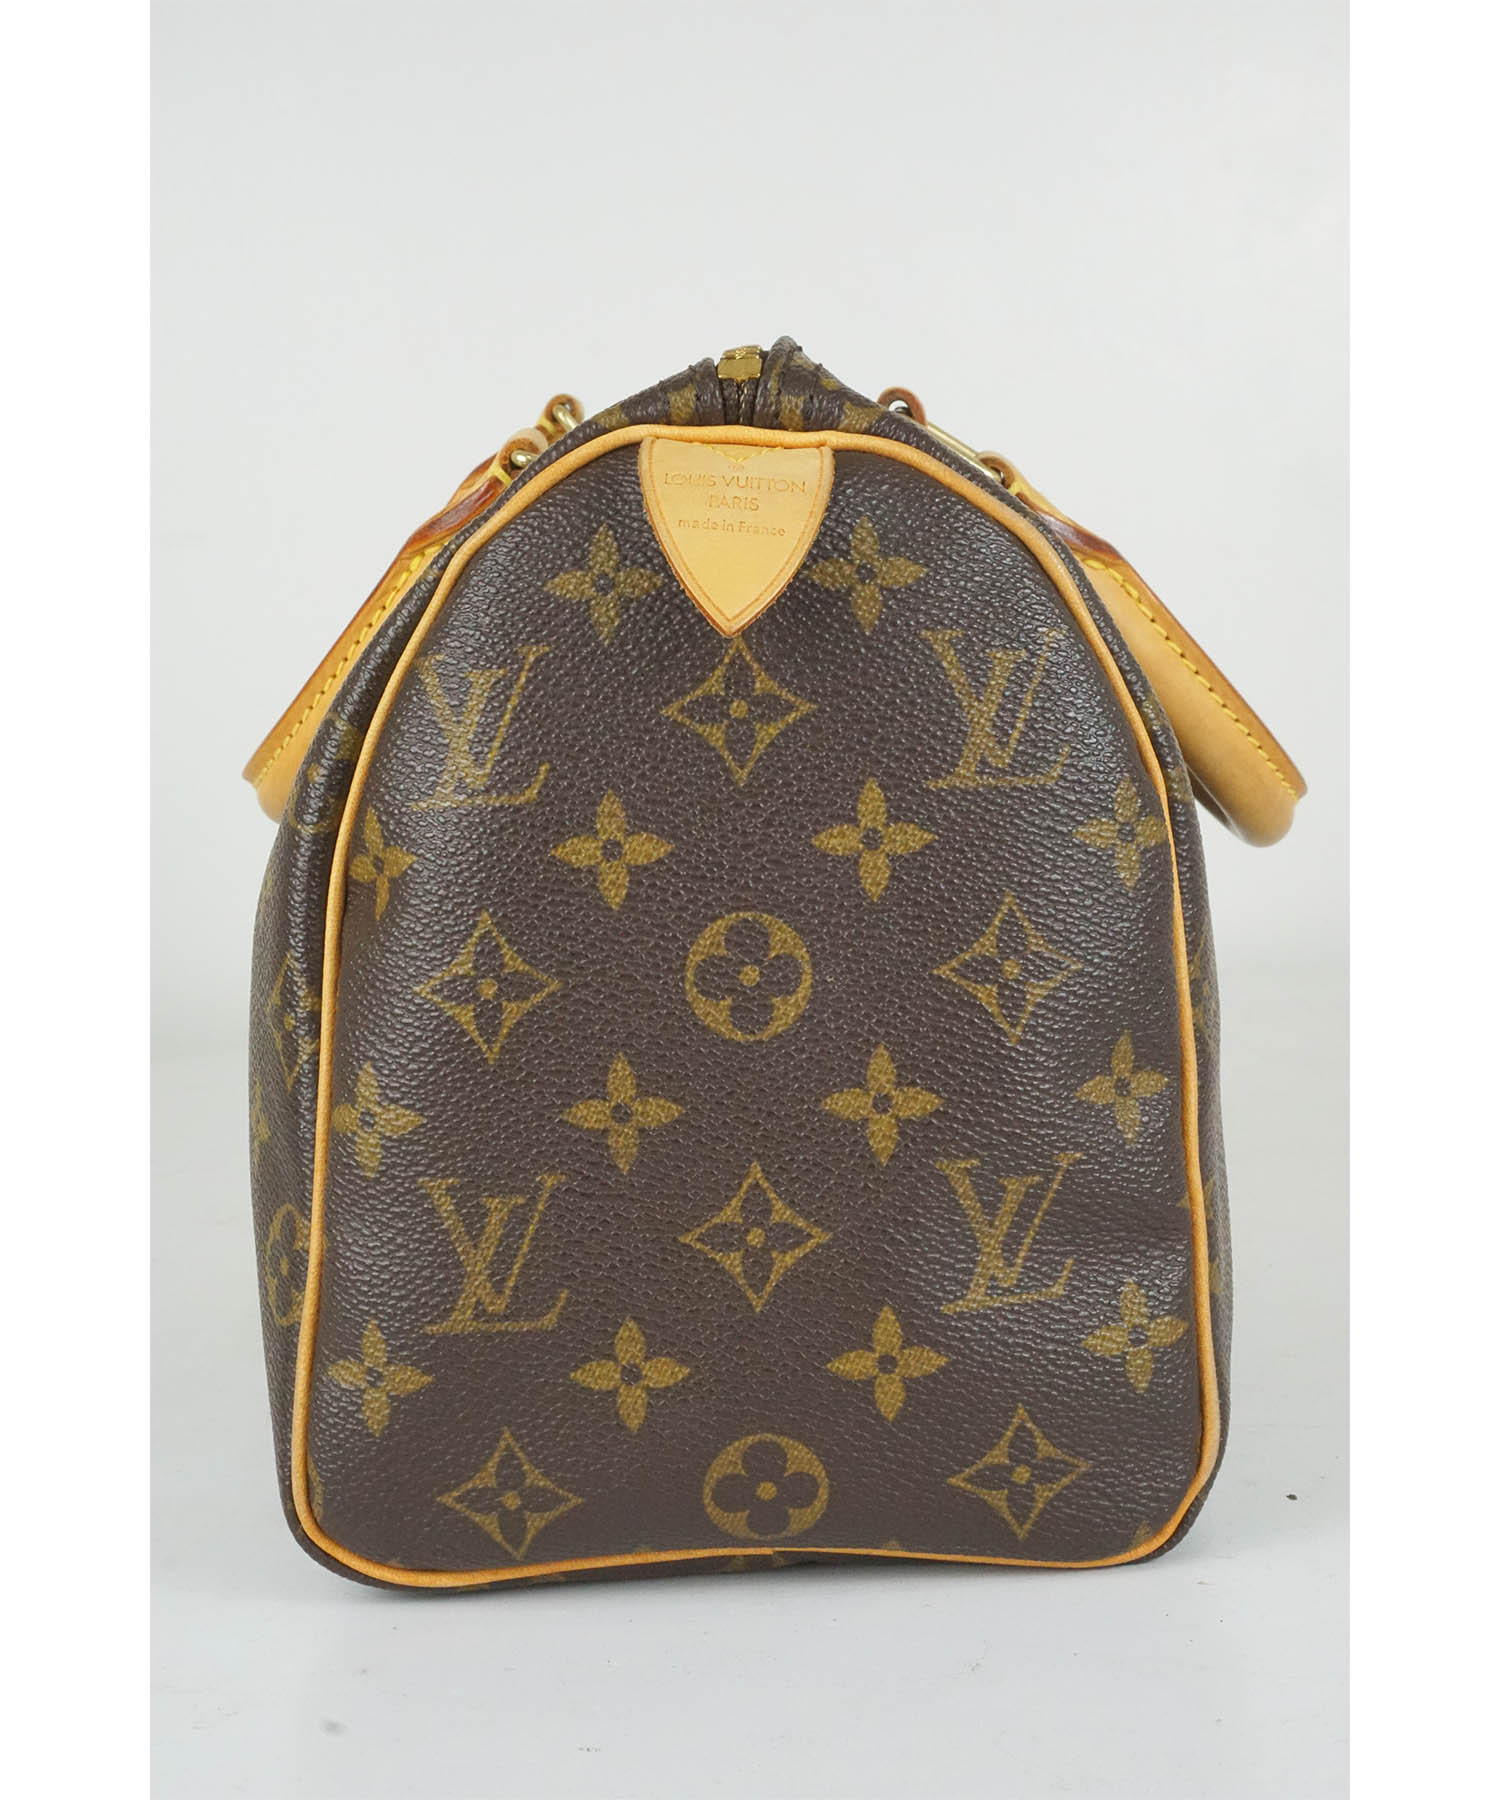 Louis Vuitton Steamer Bag Travel bag 387512